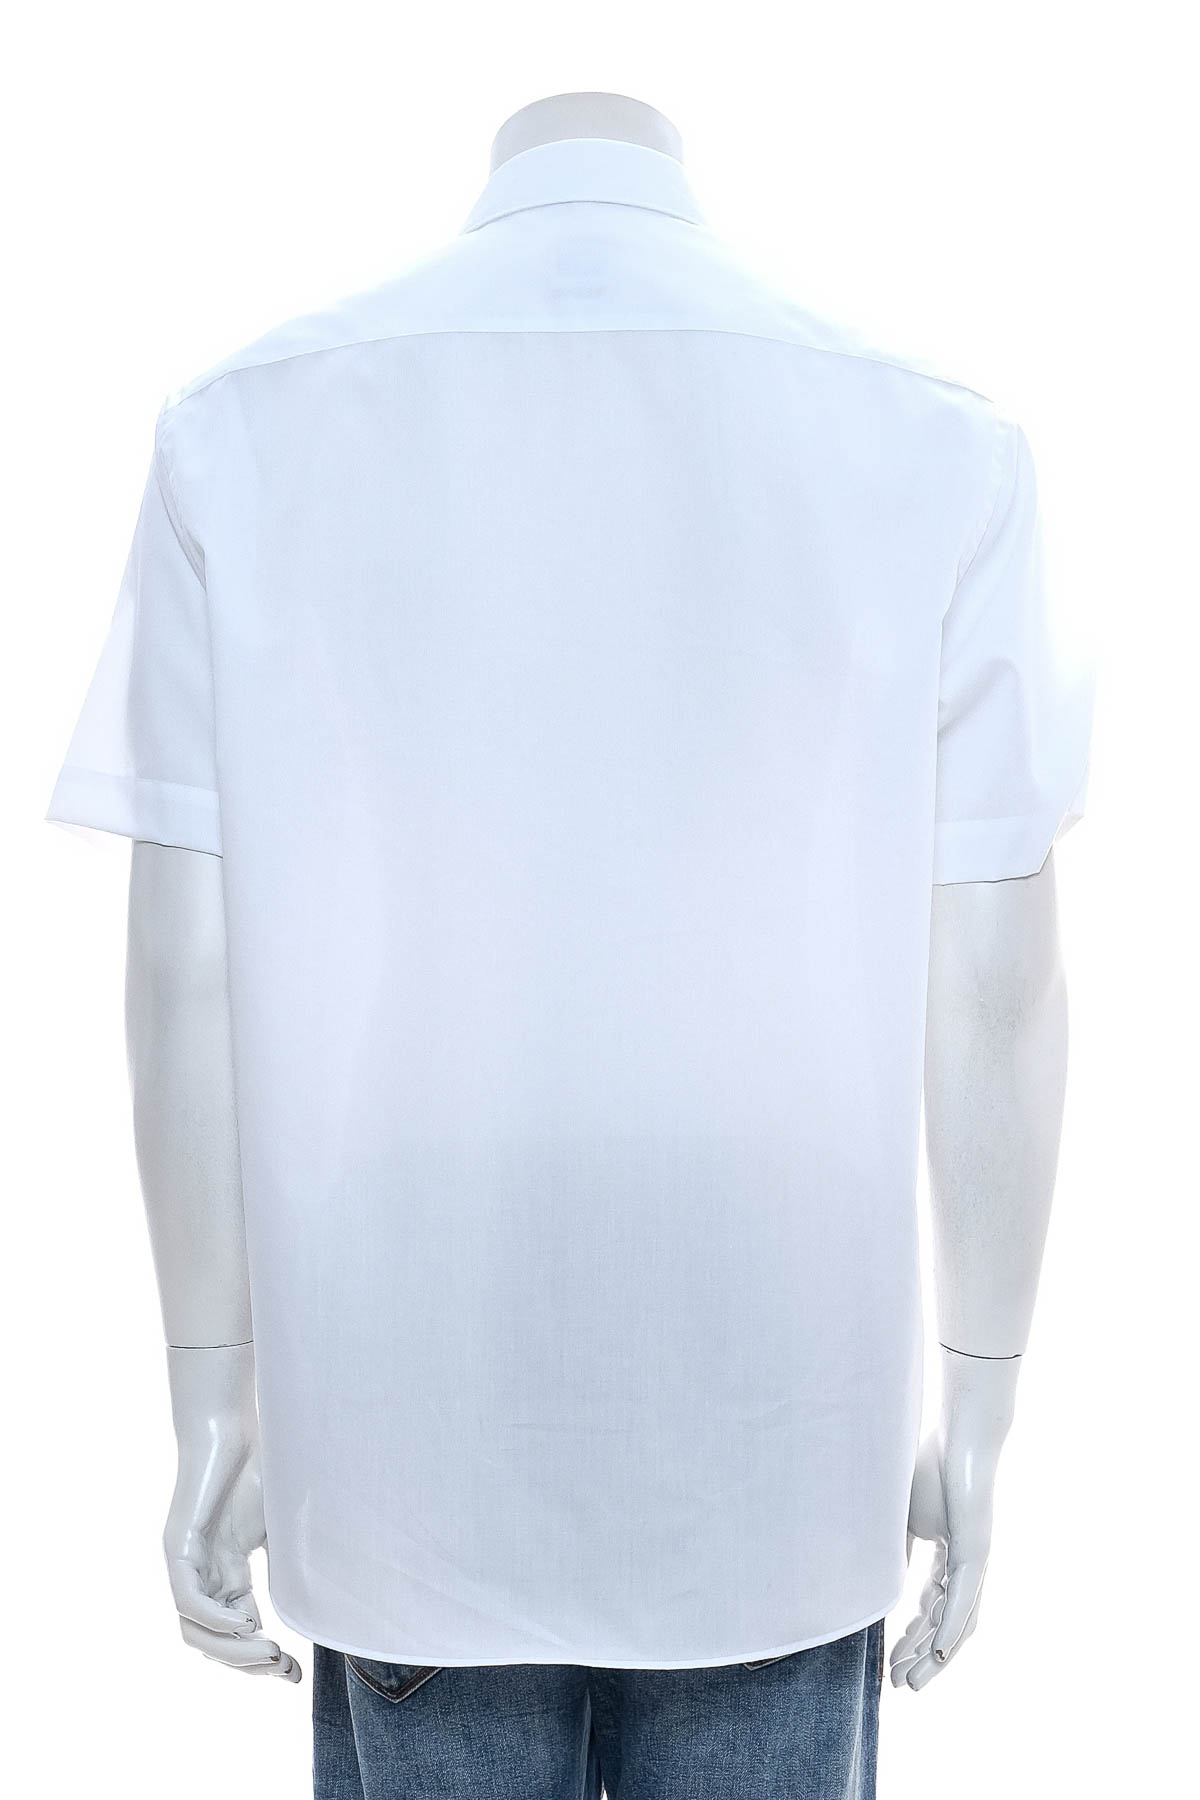 Ανδρικό πουκάμισο - HAKRO - 1